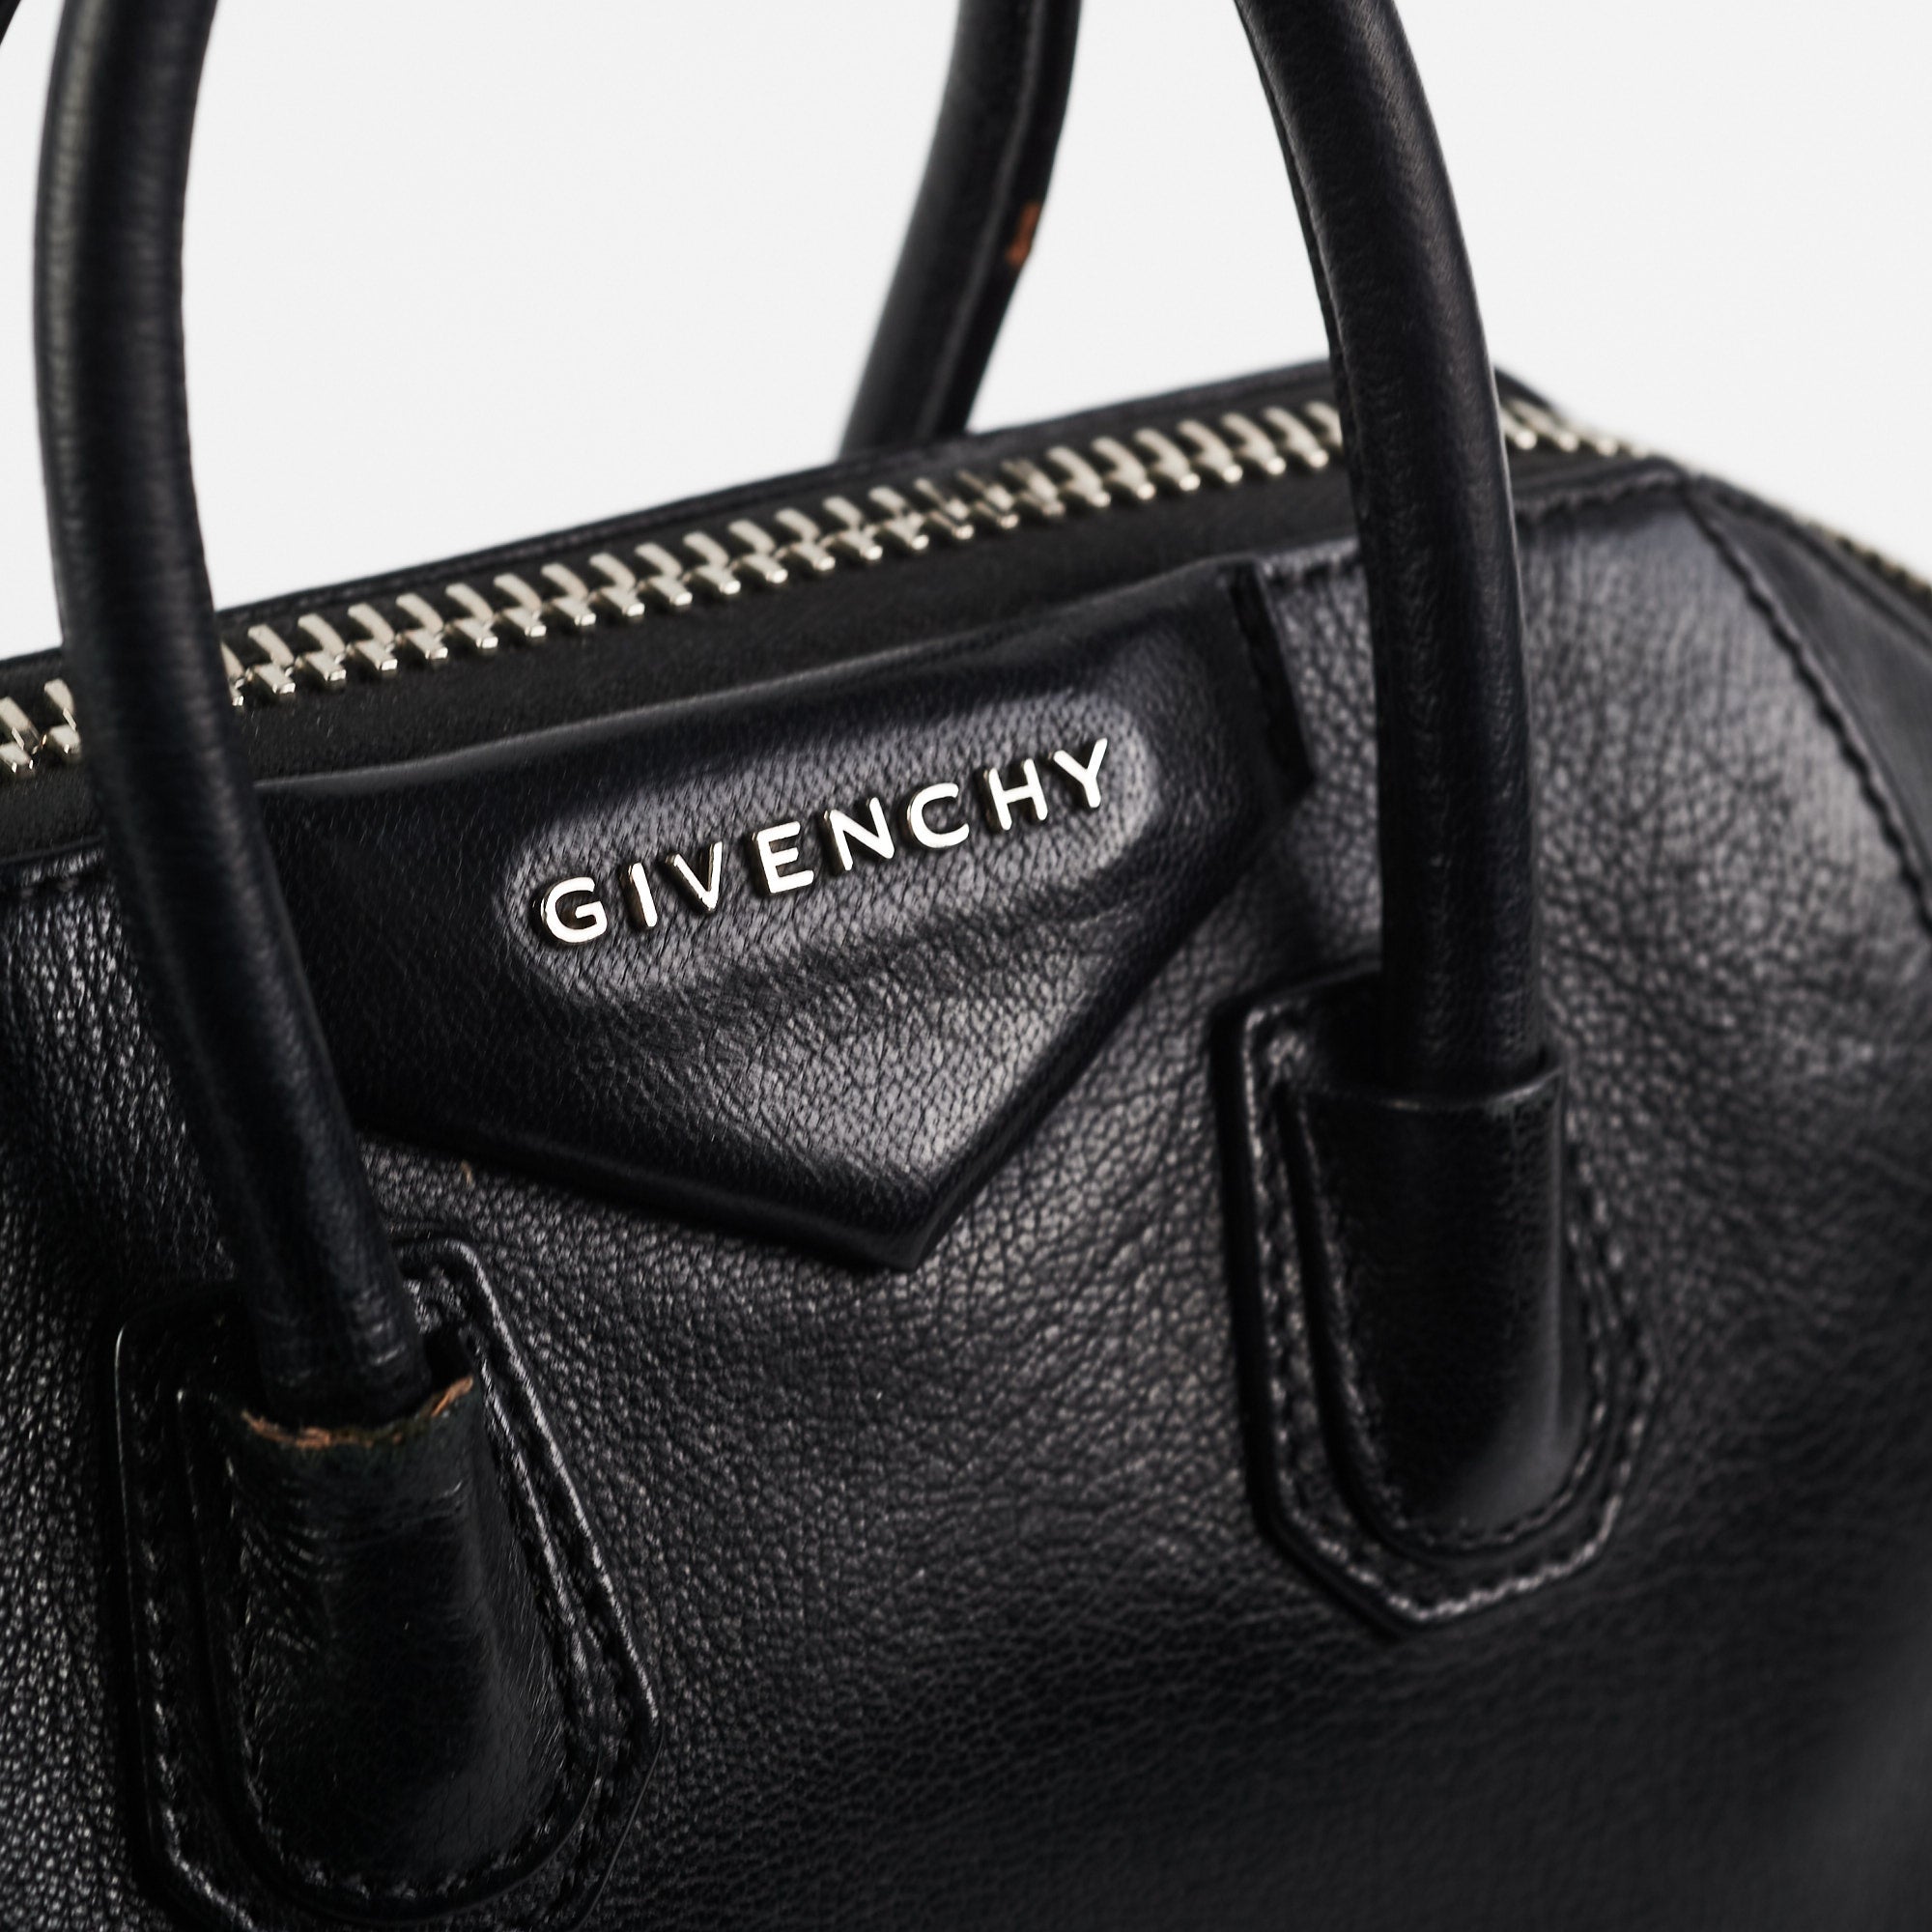 Givenchy Antigona Medium Black - THE PURSE AFFAIR